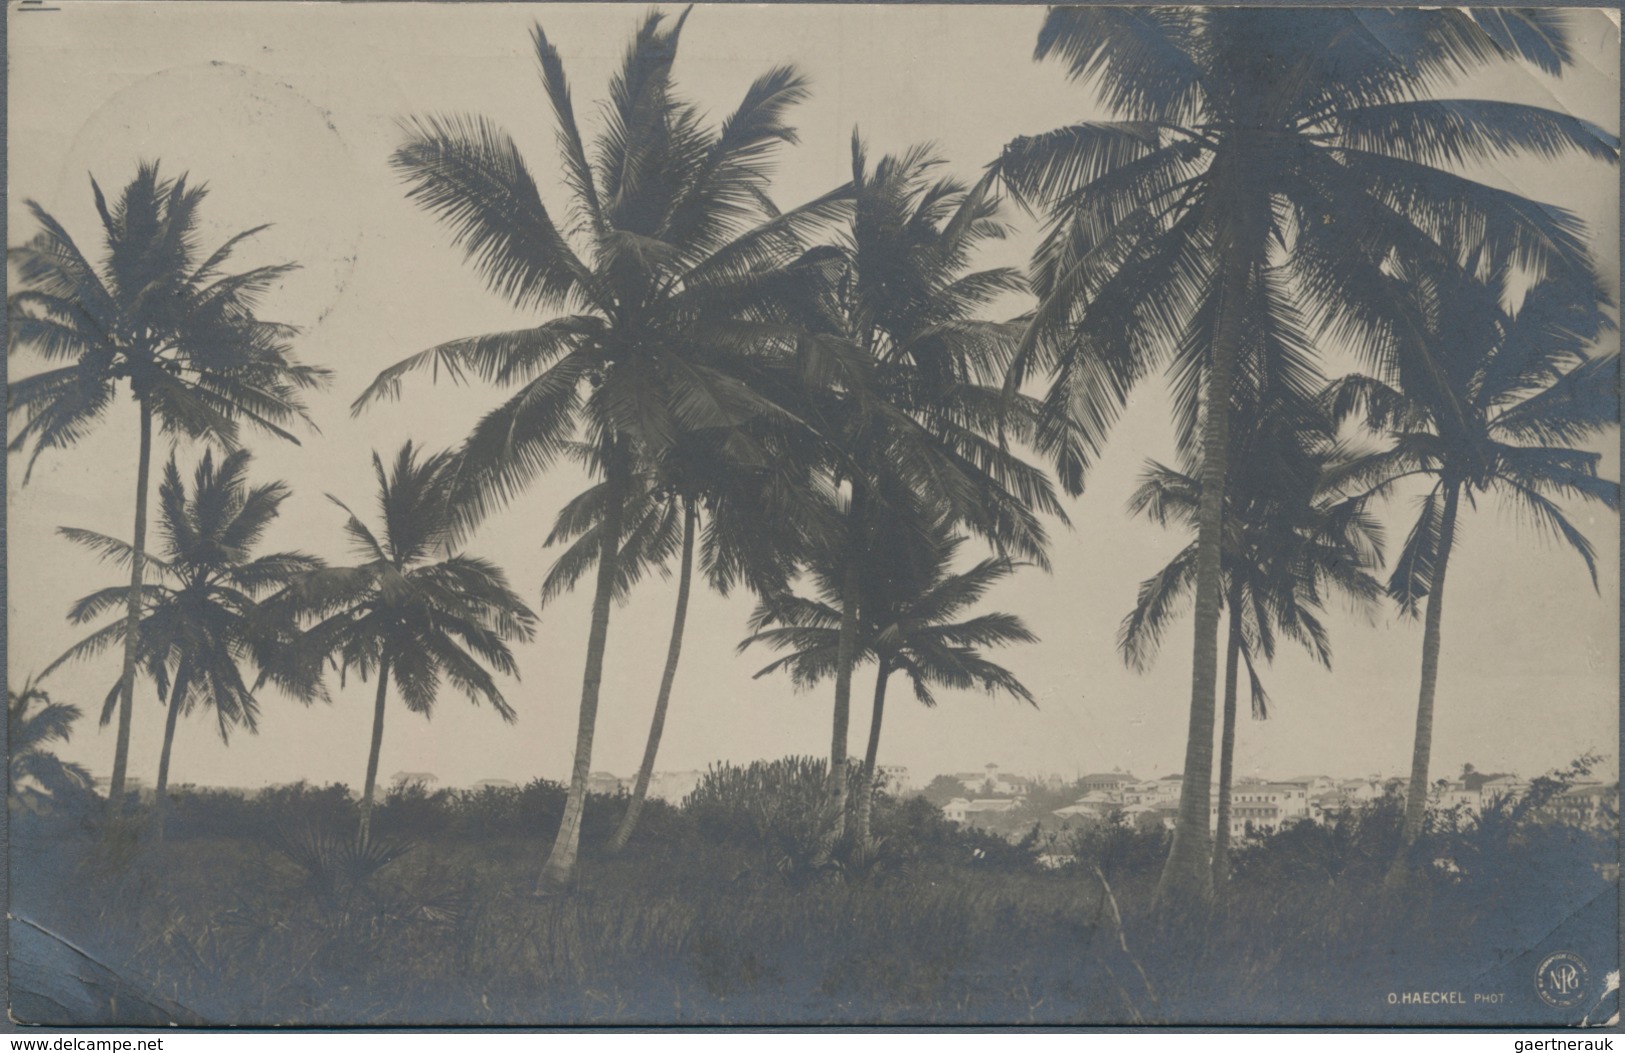 Deutsch-Ostafrika - Ganzsachen: 1908. Privat-Postkarte 2½ Heller Schiffstype Mit Rs. Foto-Abbildung - Deutsch-Ostafrika